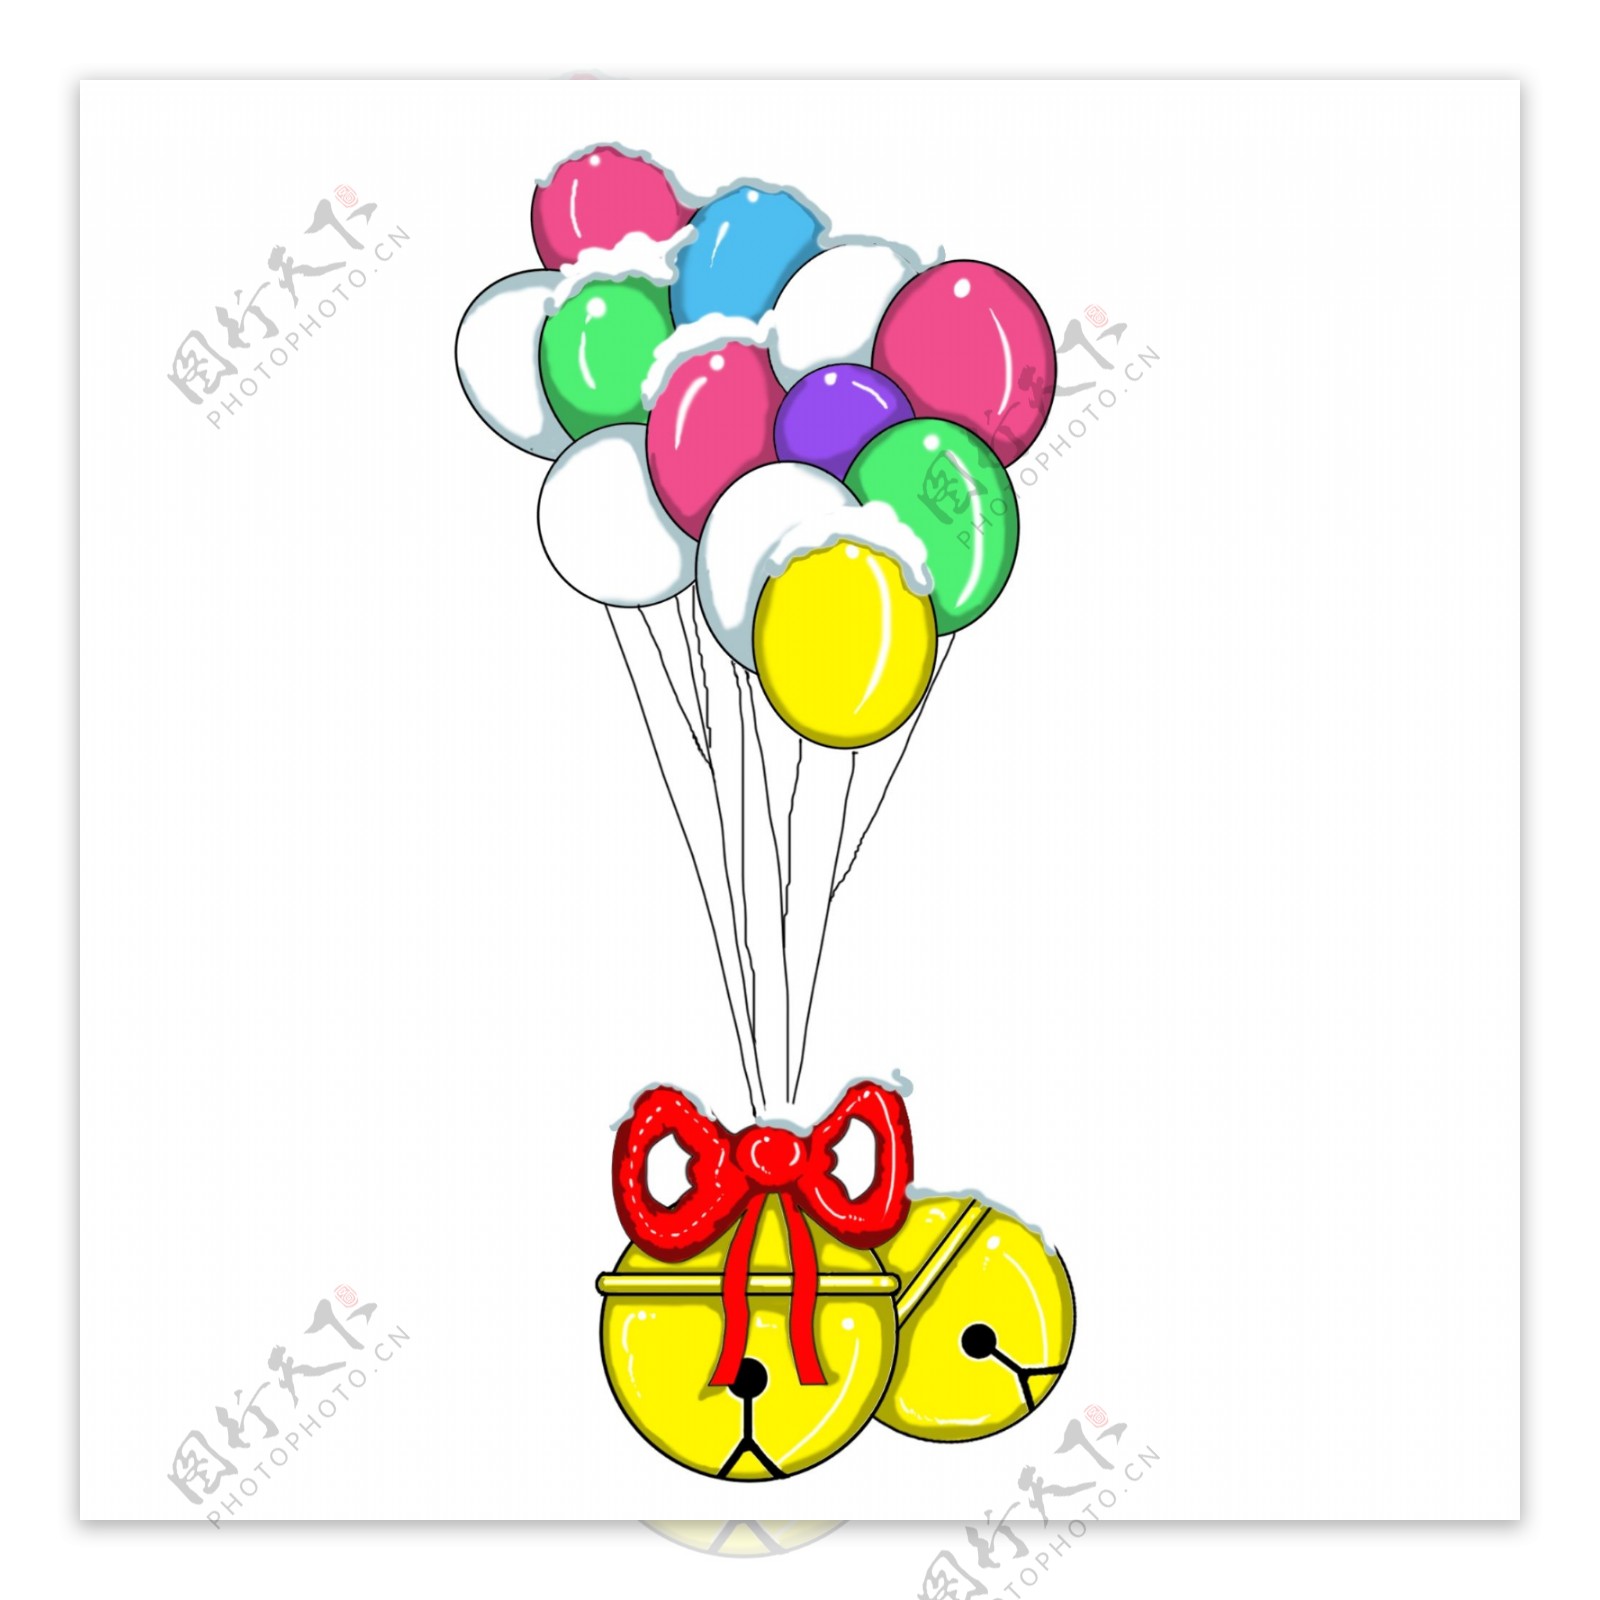 万圣节之气球铃铛可商用元素